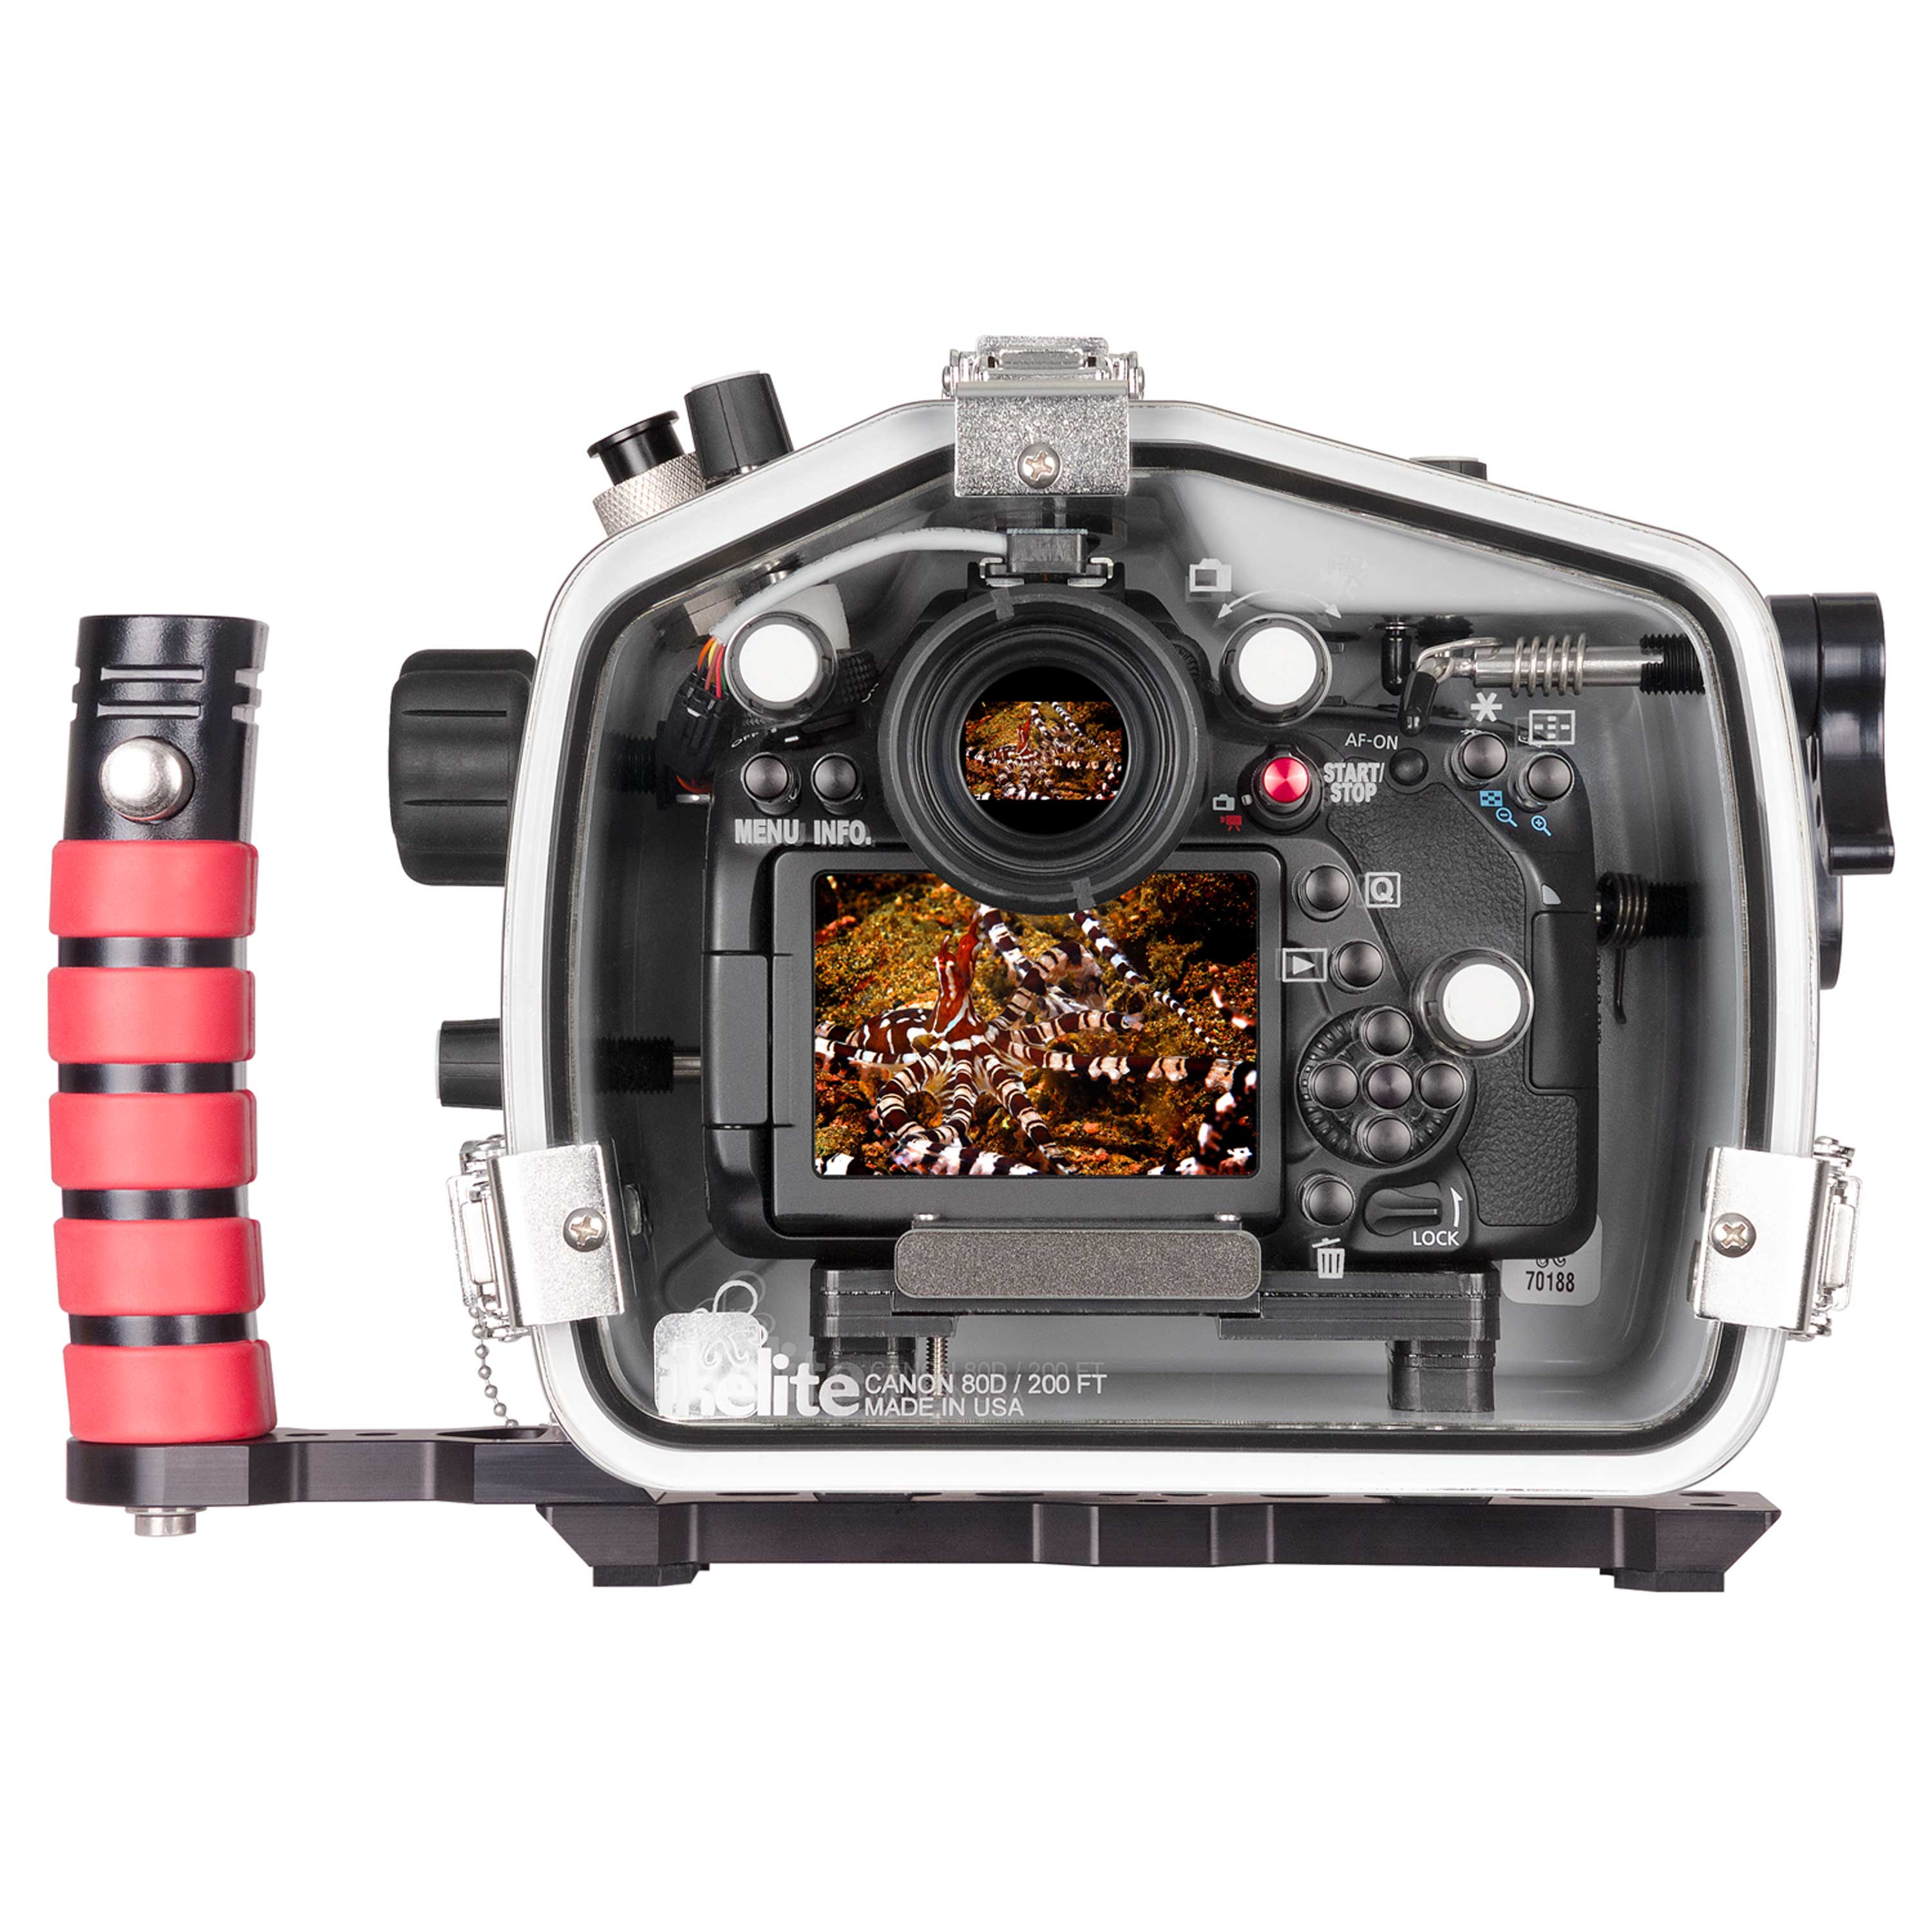 Gesprekelijk proza wees gegroet 200DL Underwater Housing for Canon EOS 80D DSLR Cameras